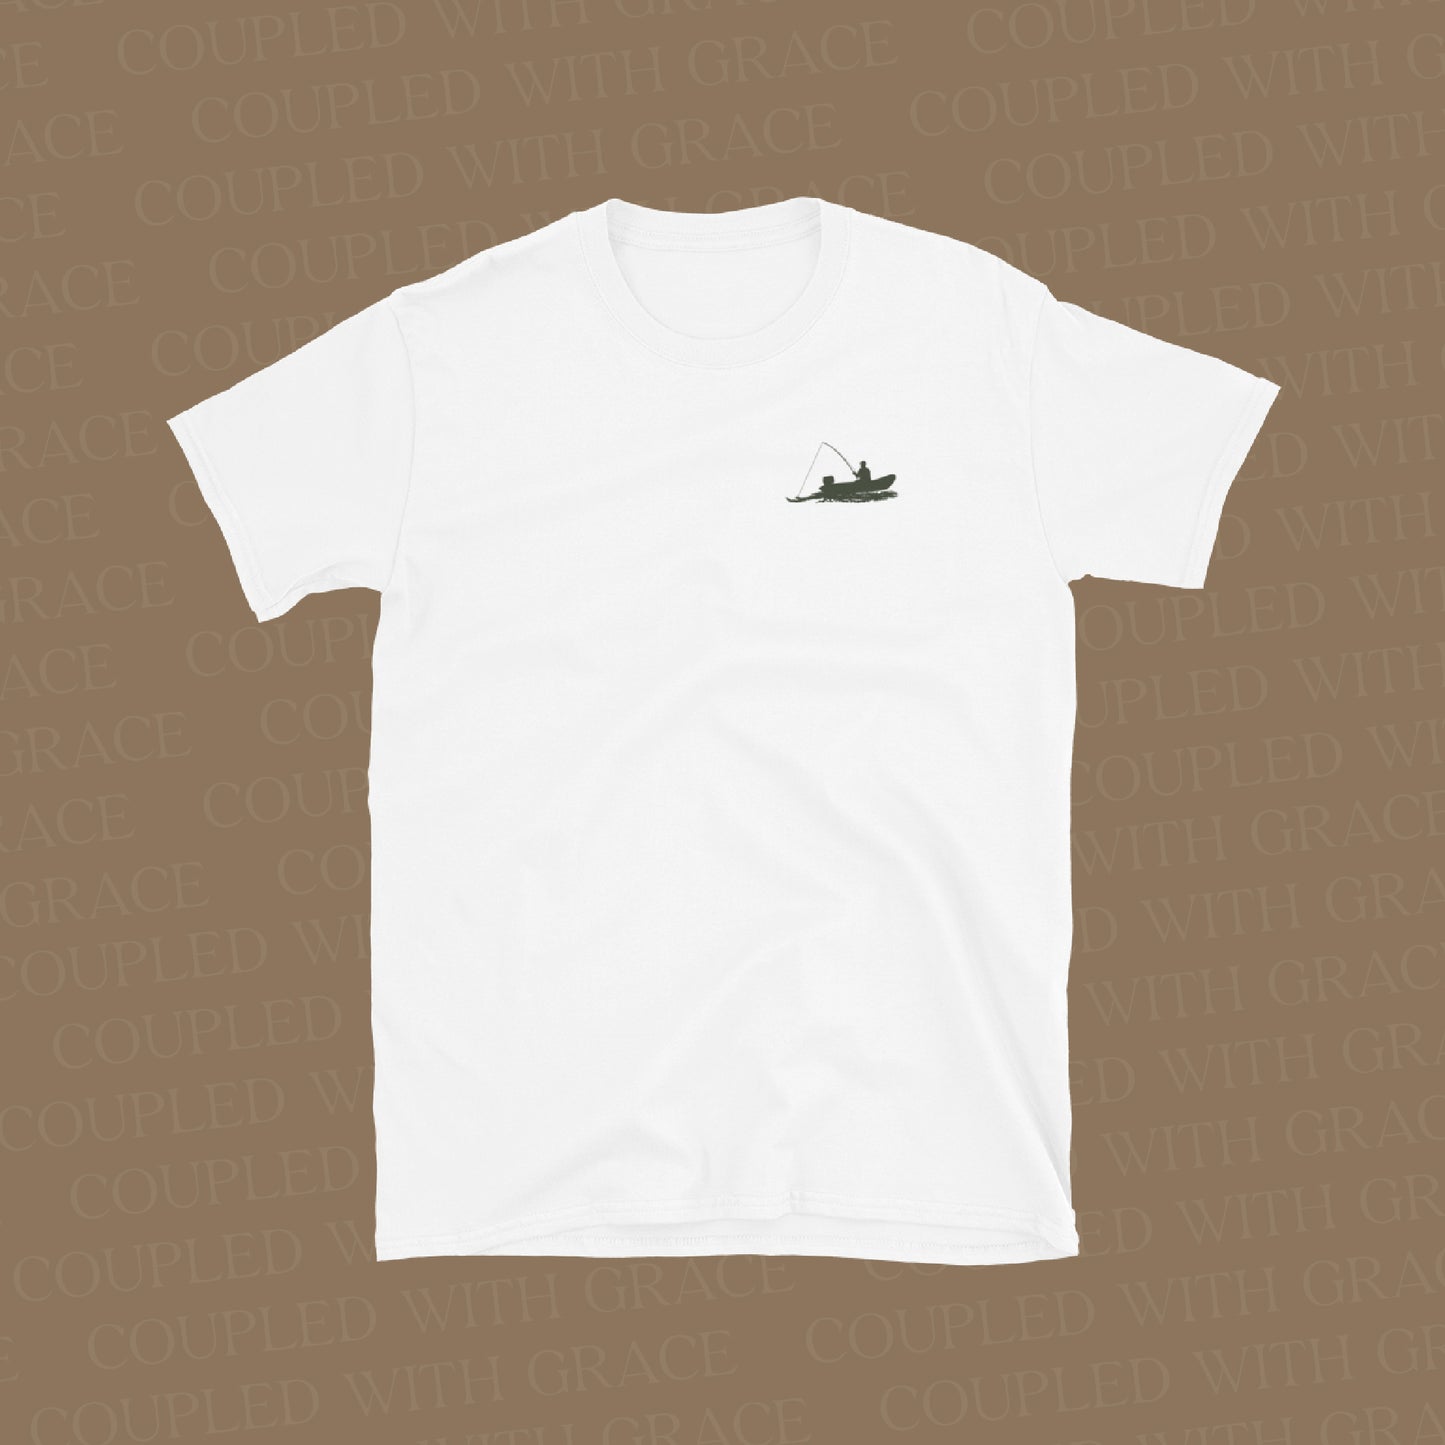 Fisher of Men Christian Shirt | Christian Apparel | Christian Shirt for Men | Christian Tshirt | Fishing Shirt | Fisherman Shirt